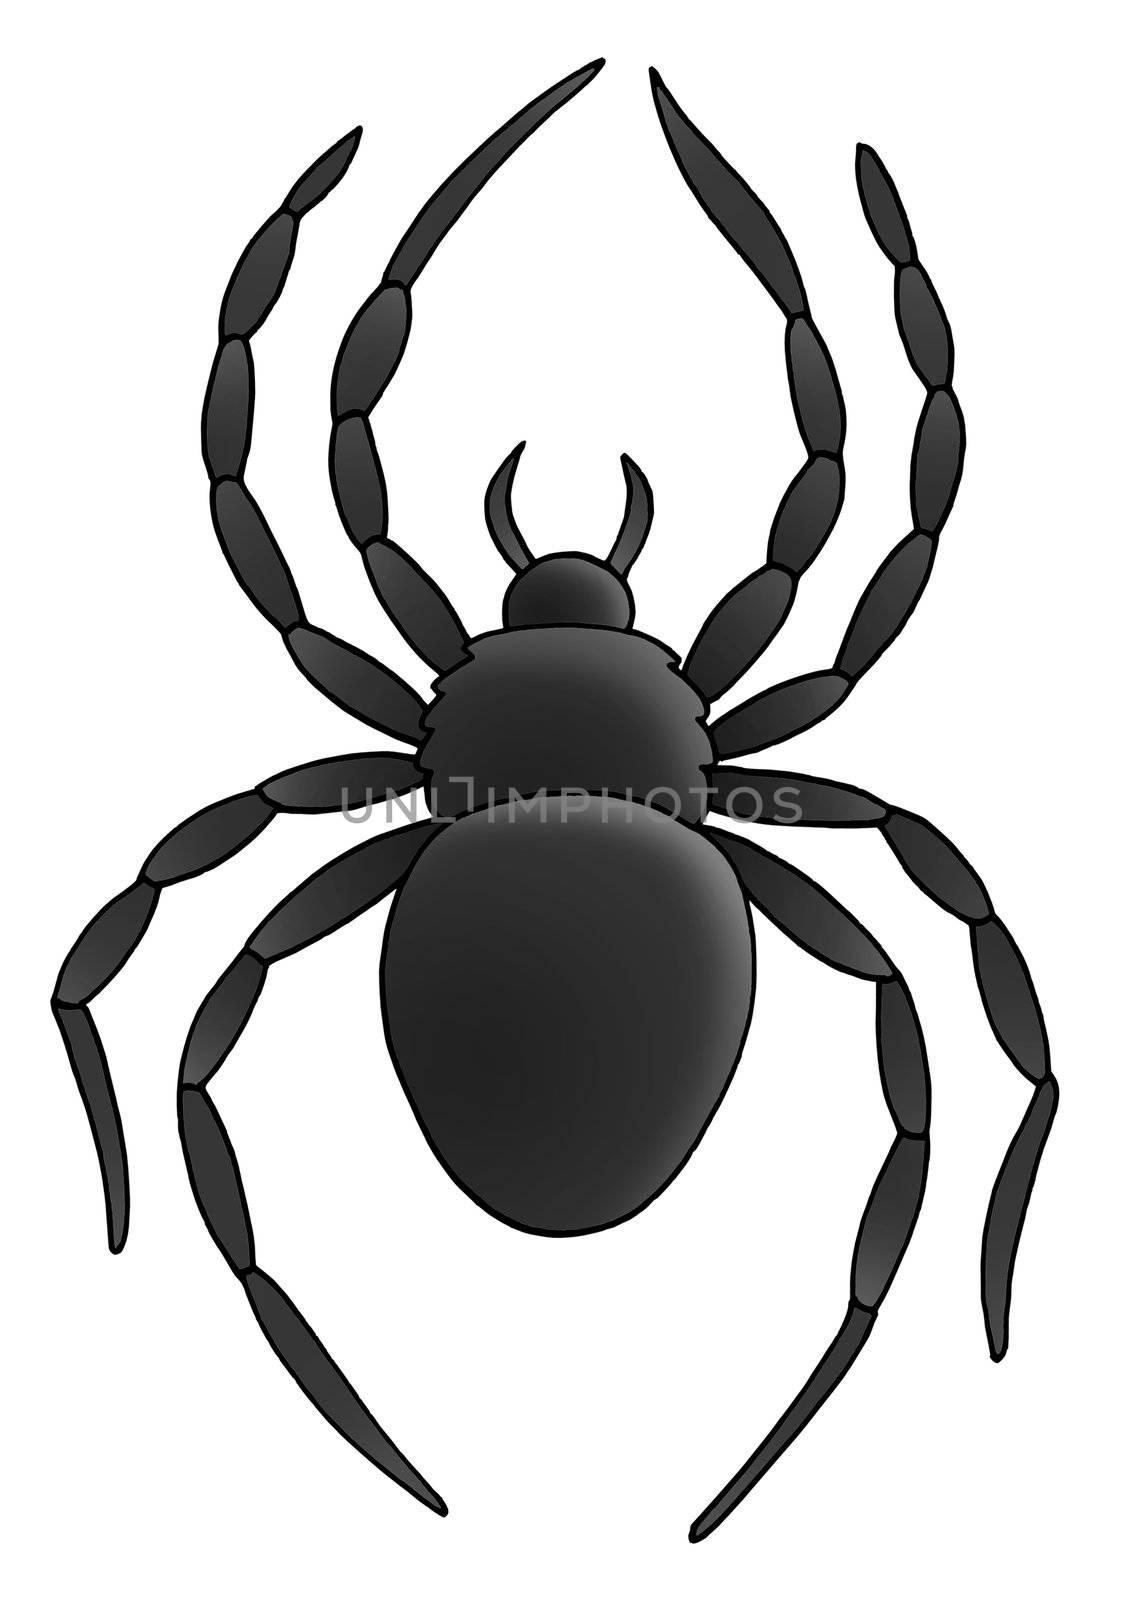 Spider on white background - illustration.